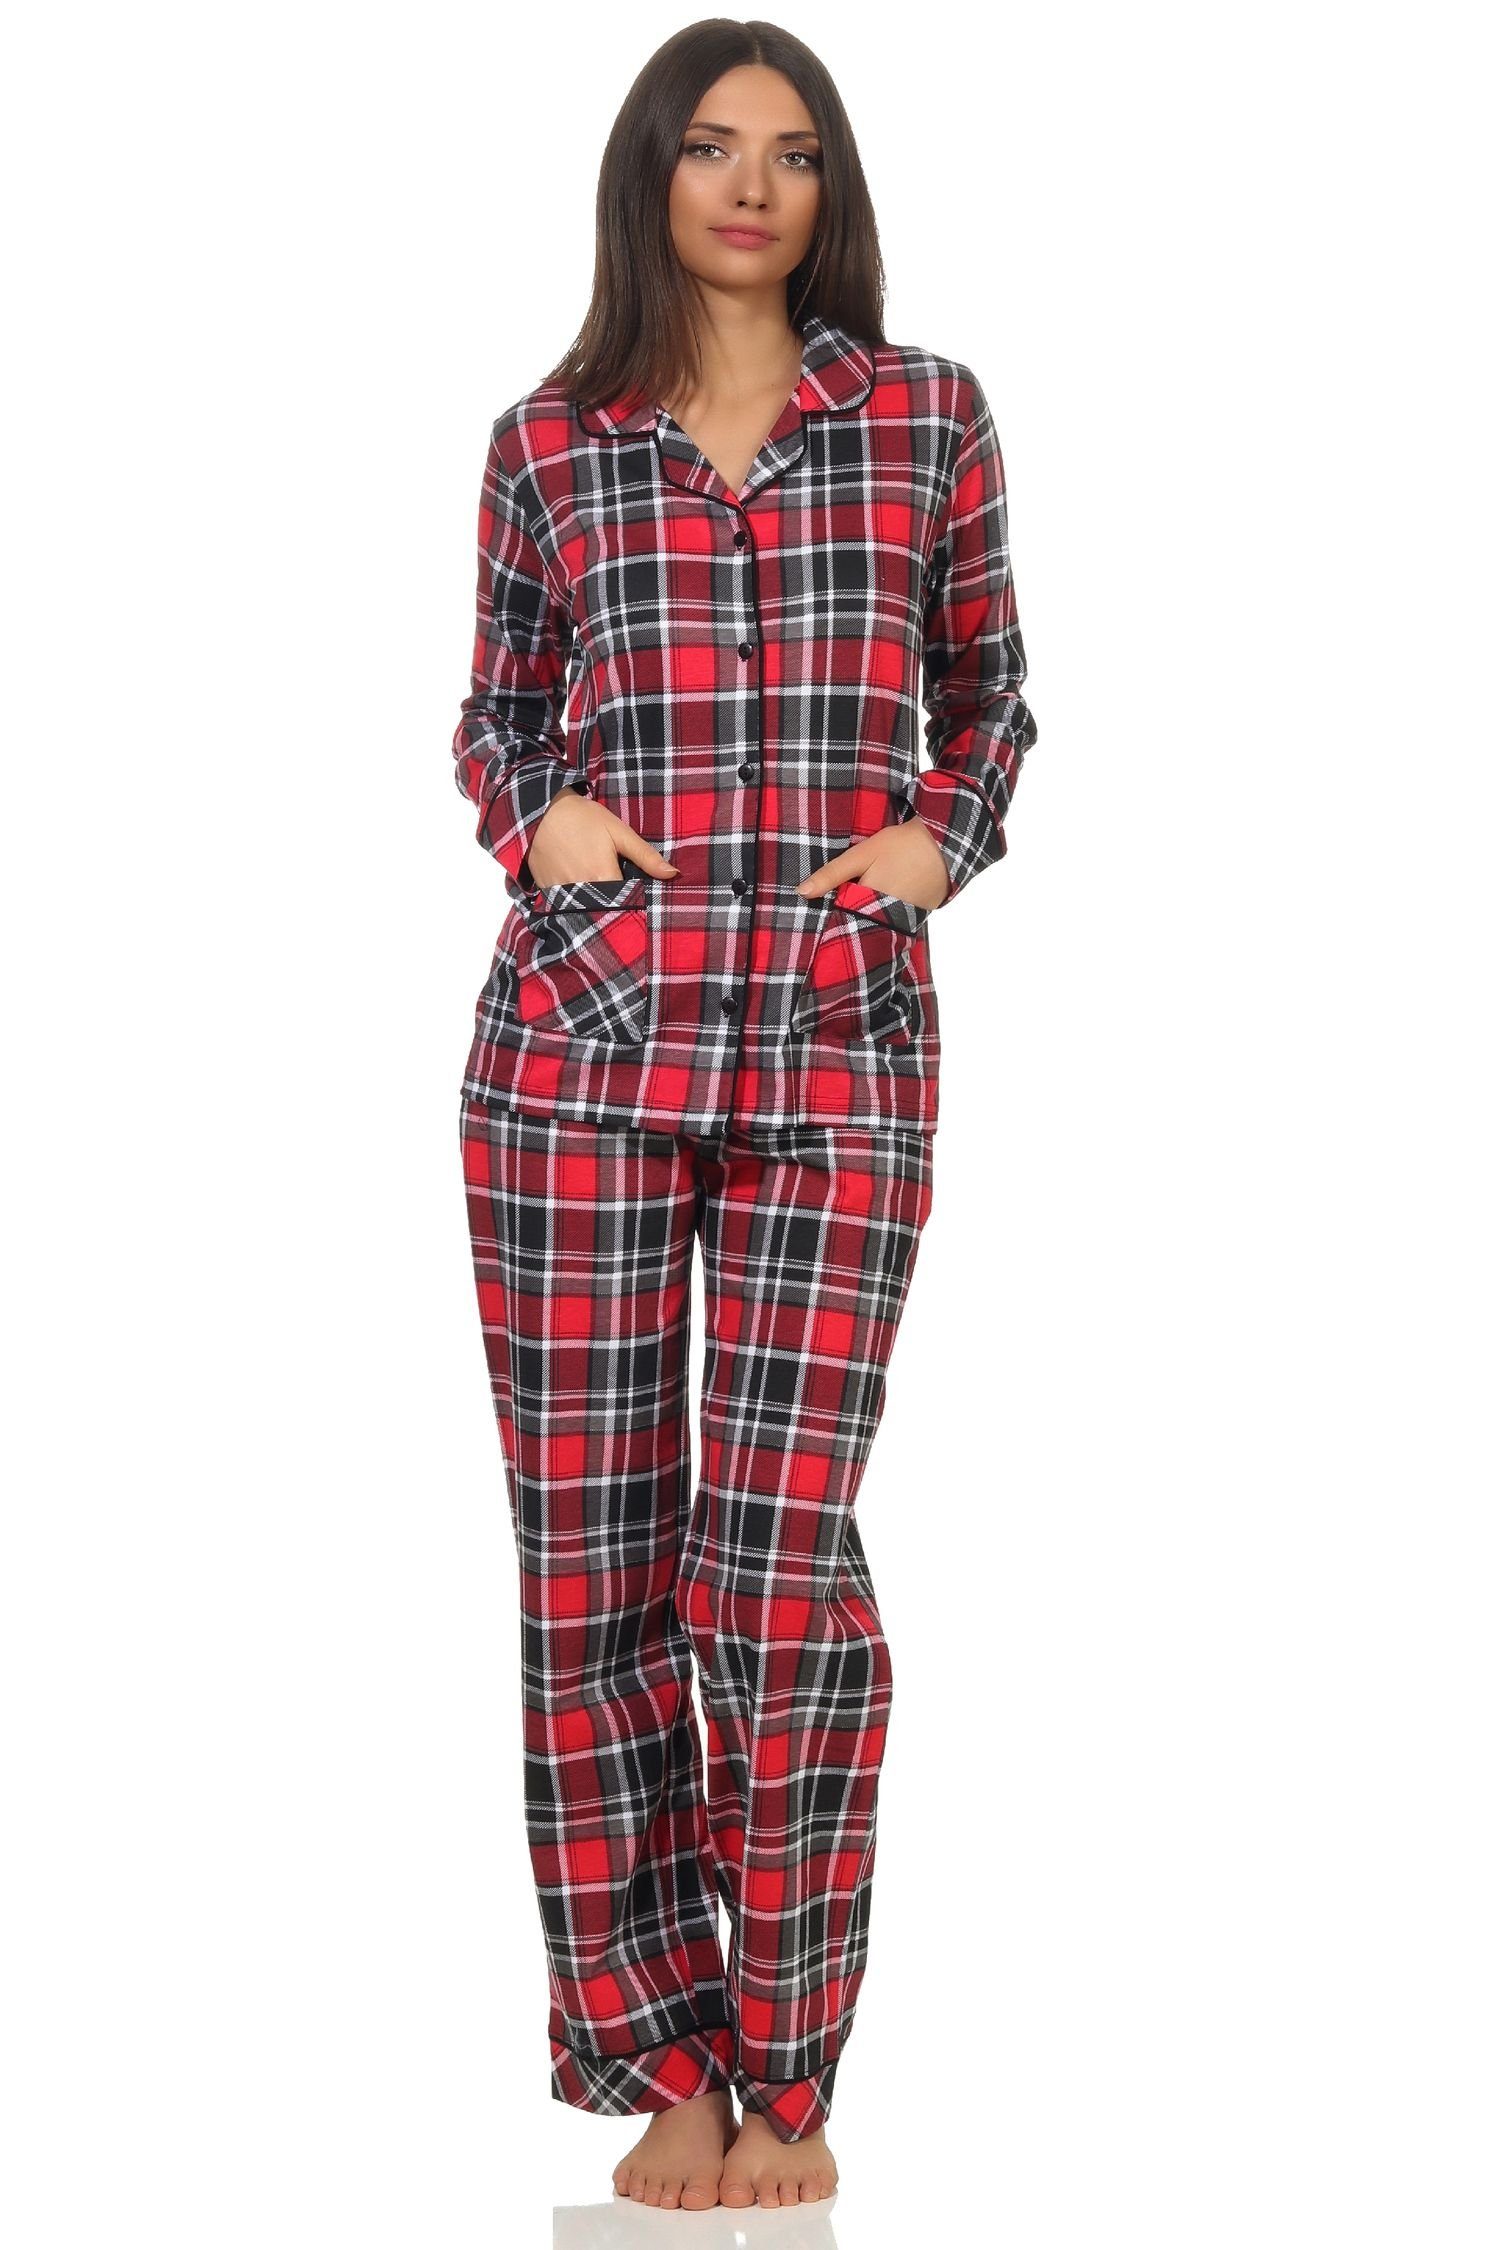 Normann Pyjama Damen Single in durchknöpfen Optik Karo Pyjama Jersey in Qualität zum